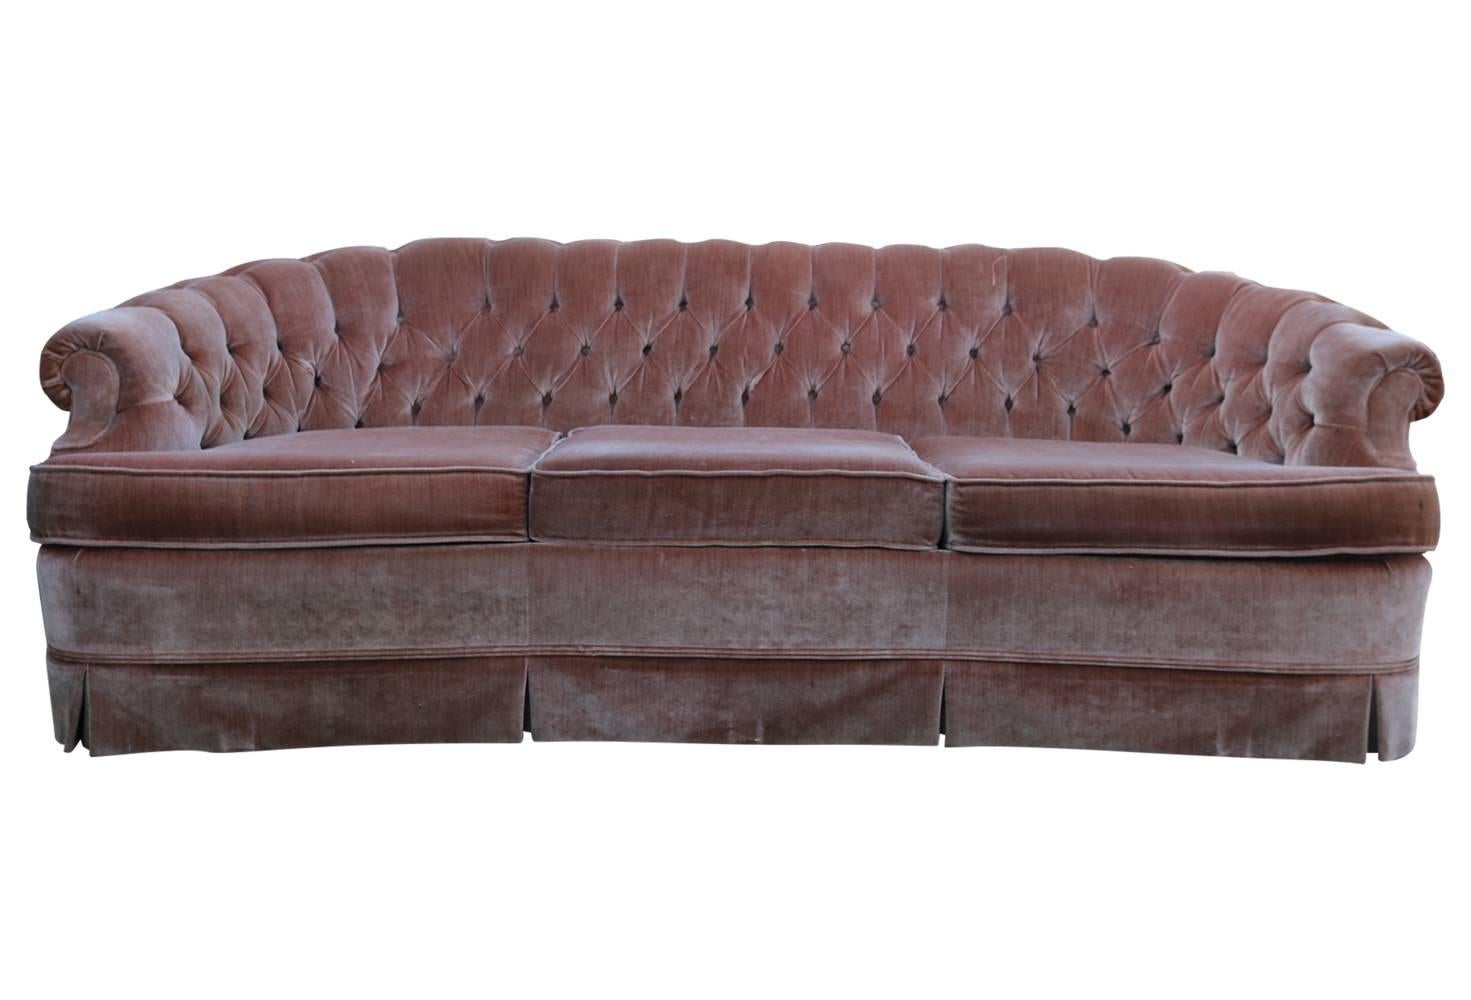 1960s Tufted Pink Velvet Chesterfield Sofa